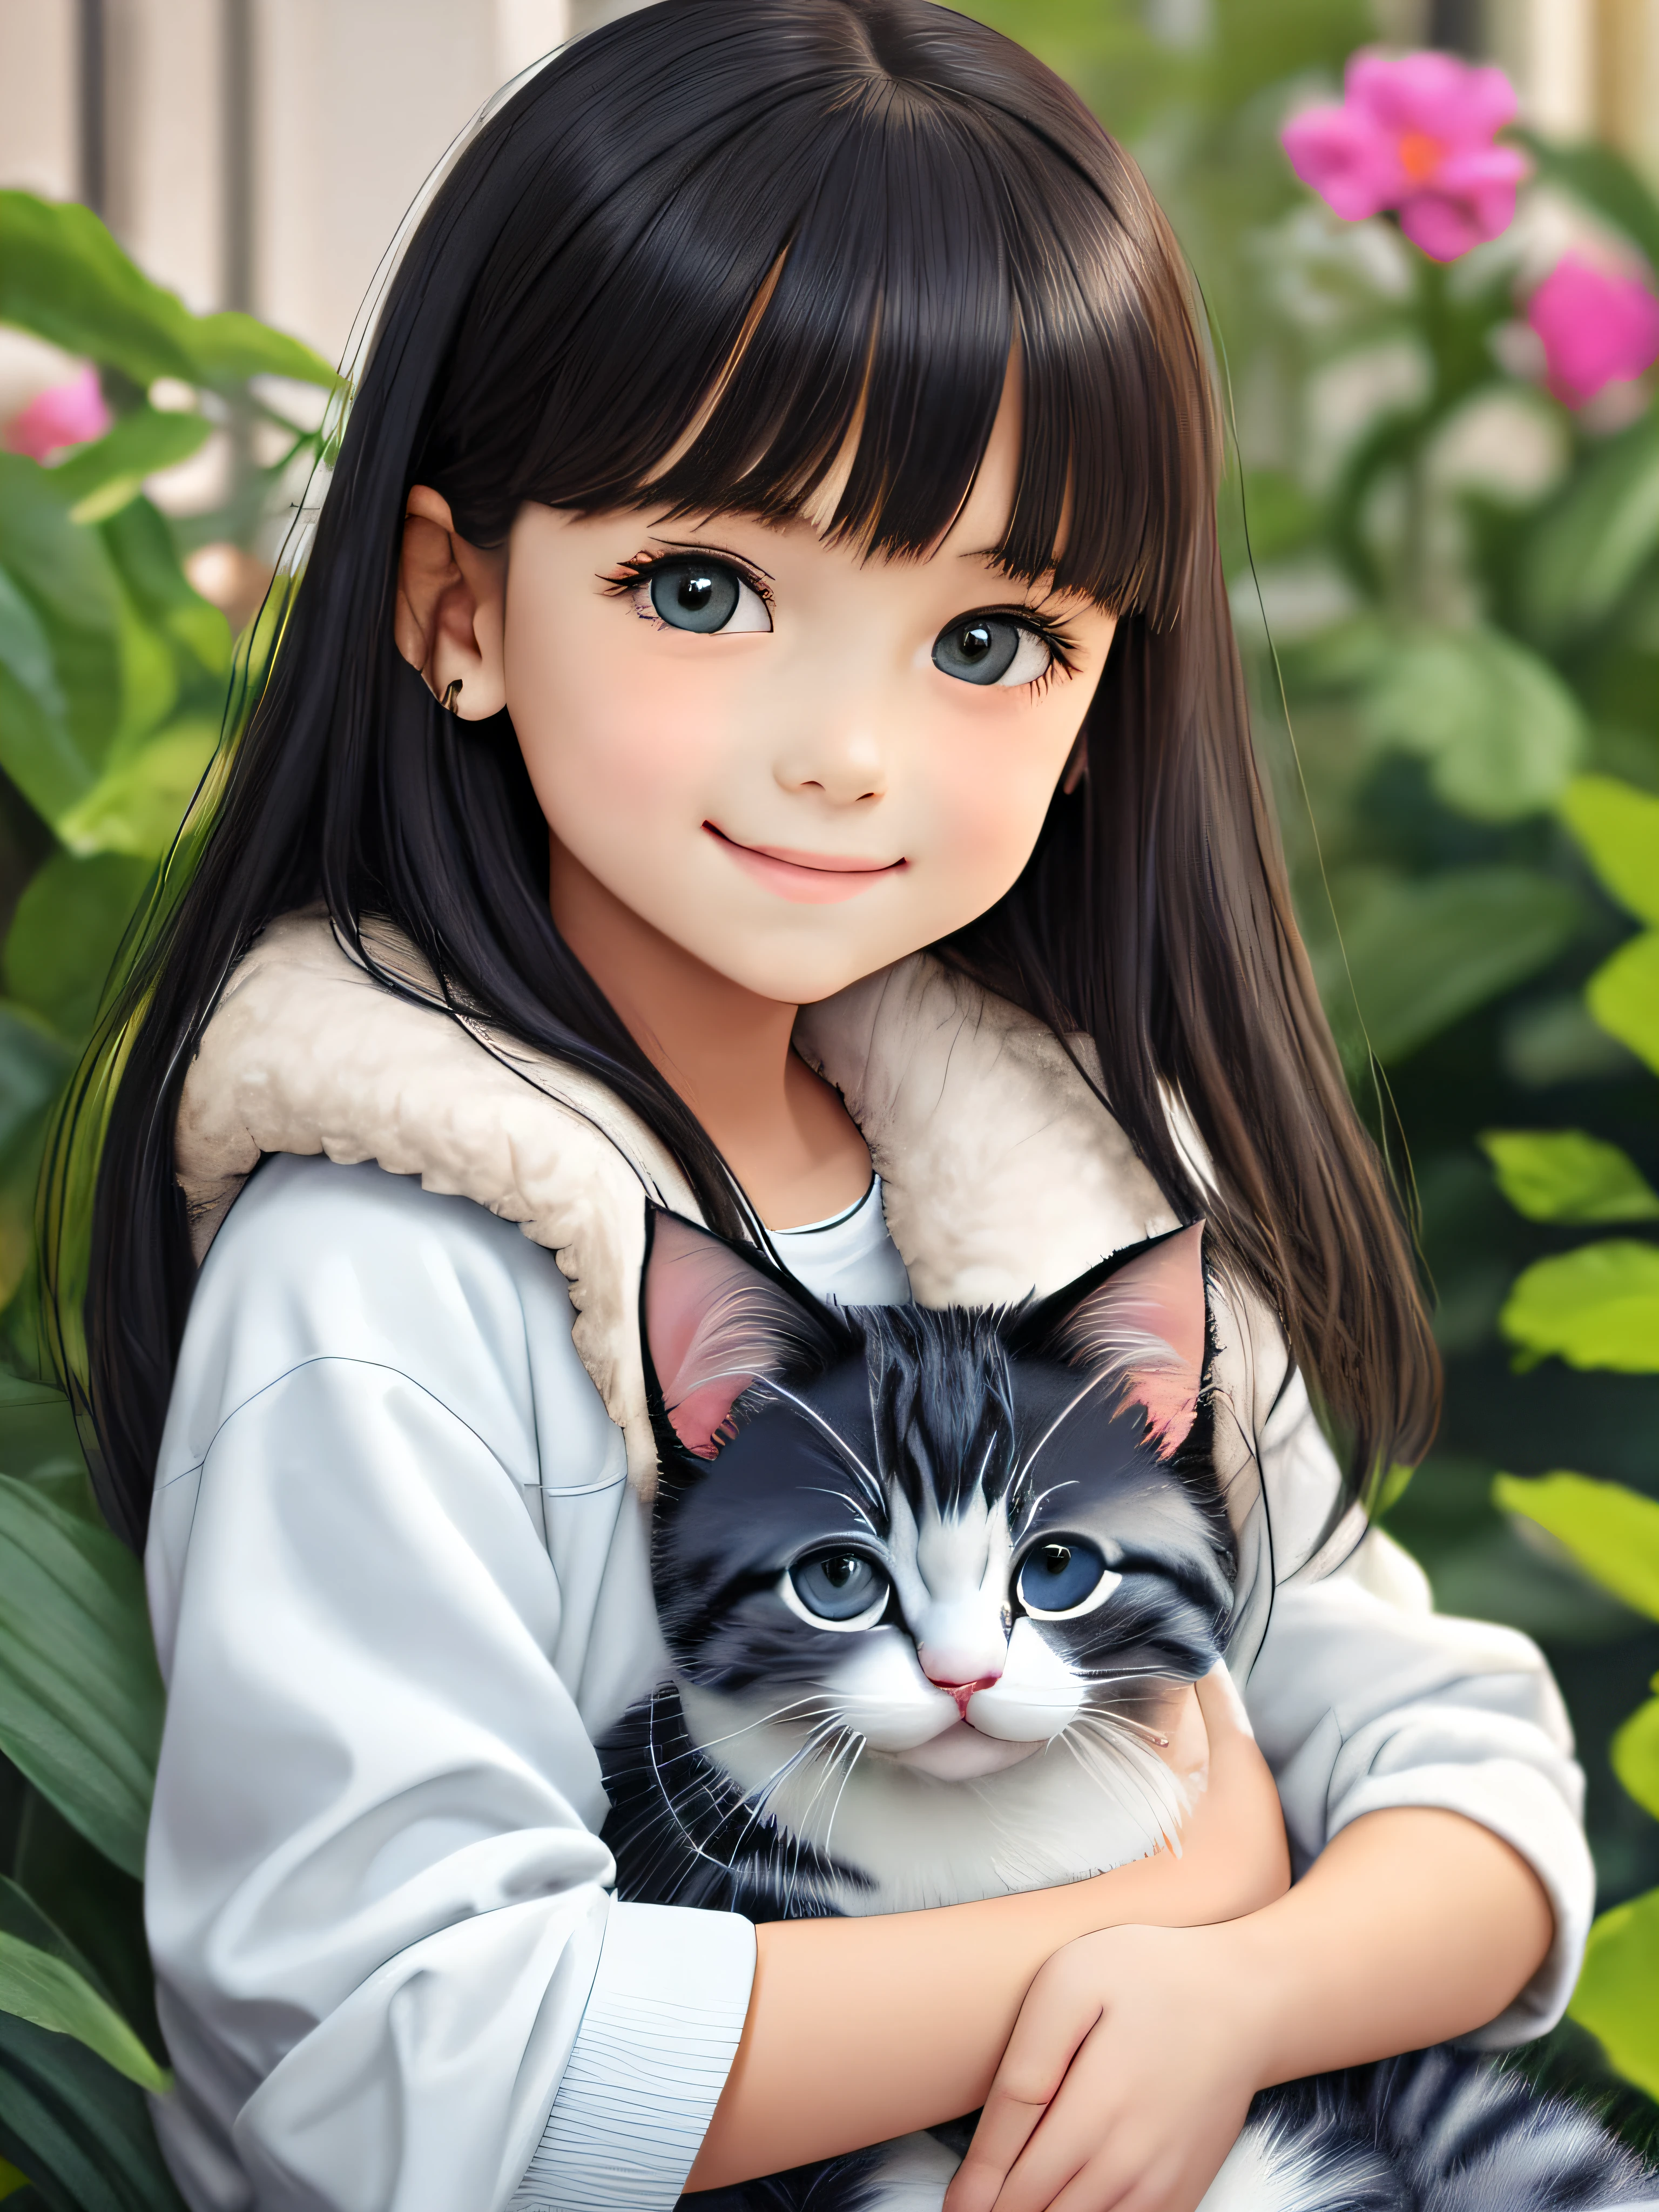 una niña caucásica de 8 años, de color piel, con cabello negro largo y liso y flequillo, con ojos color avellana, sonriendo con un tono realista, vistiendo una chaqueta blanca esponjosa y sosteniendo un lindo gatito gris en su regazo, en una pequeña casa rodeada de un hermoso jardín